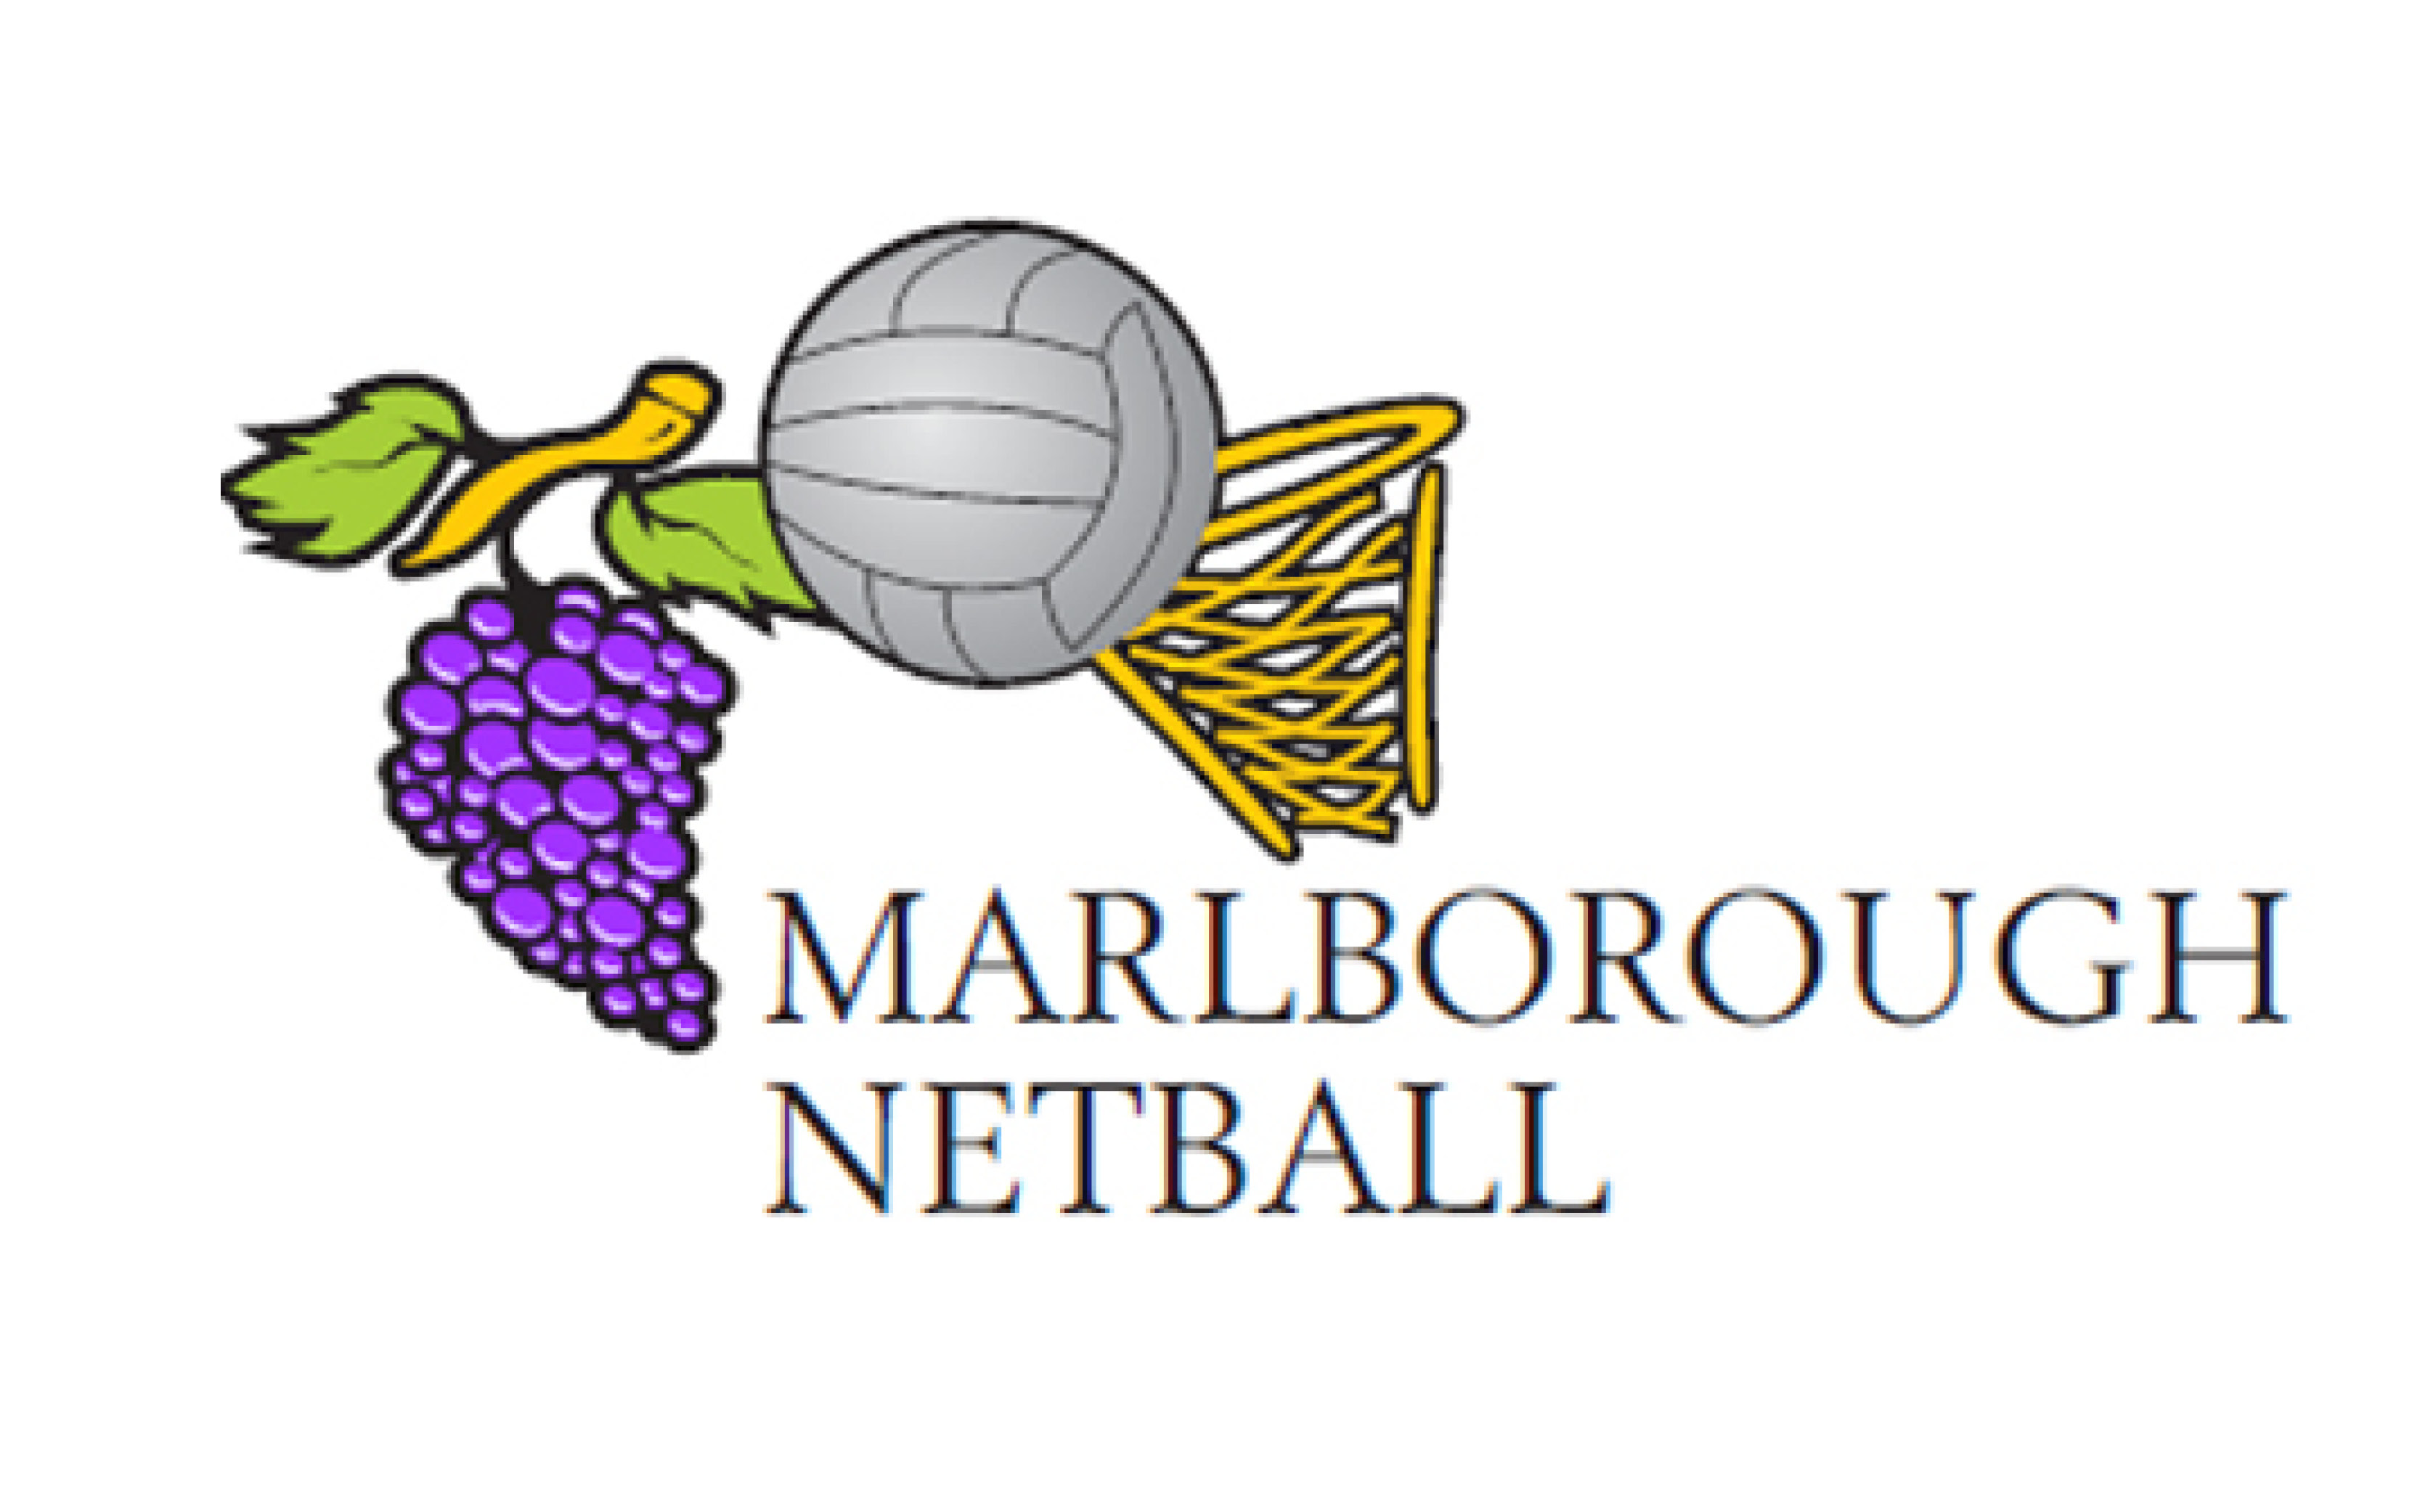 Marlborough Netball